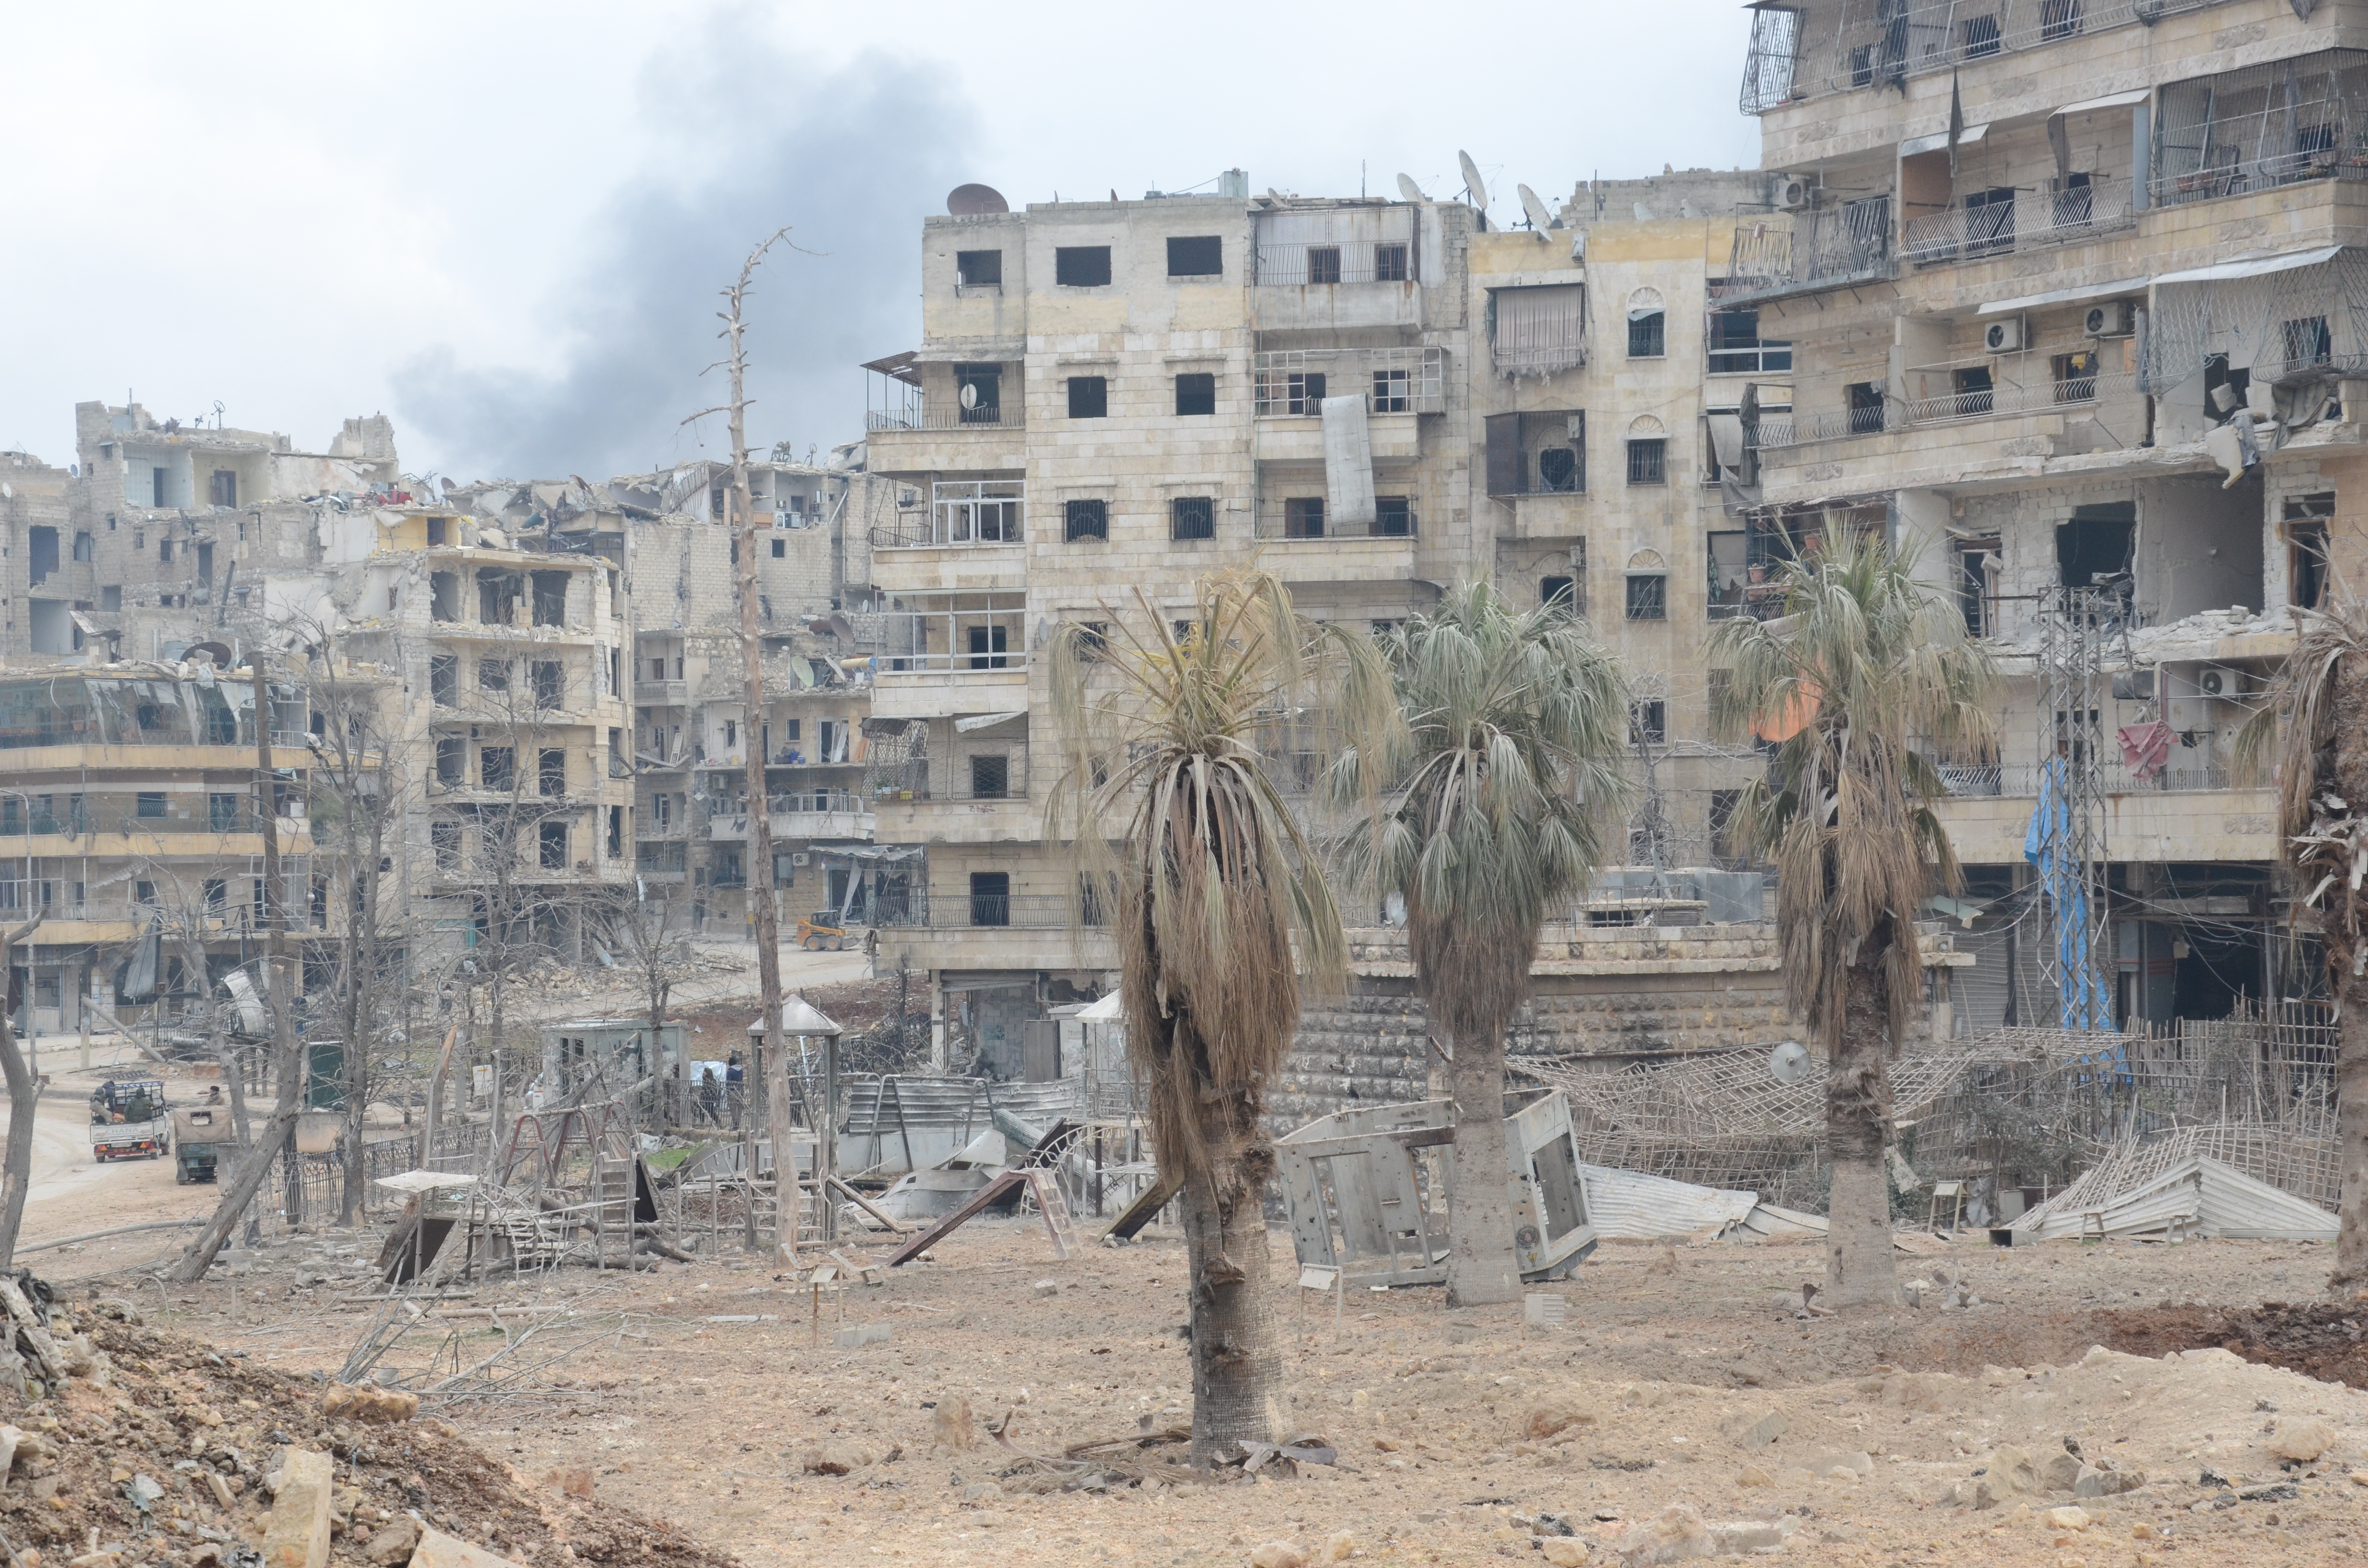 W Aleppo, zwanym syryjskim Stalingradem, toczyła się najdłuższa czteroletnia bitwa podczas wojny w Syrii. Rodzina Omara uciekła z miasta w 2017 r.